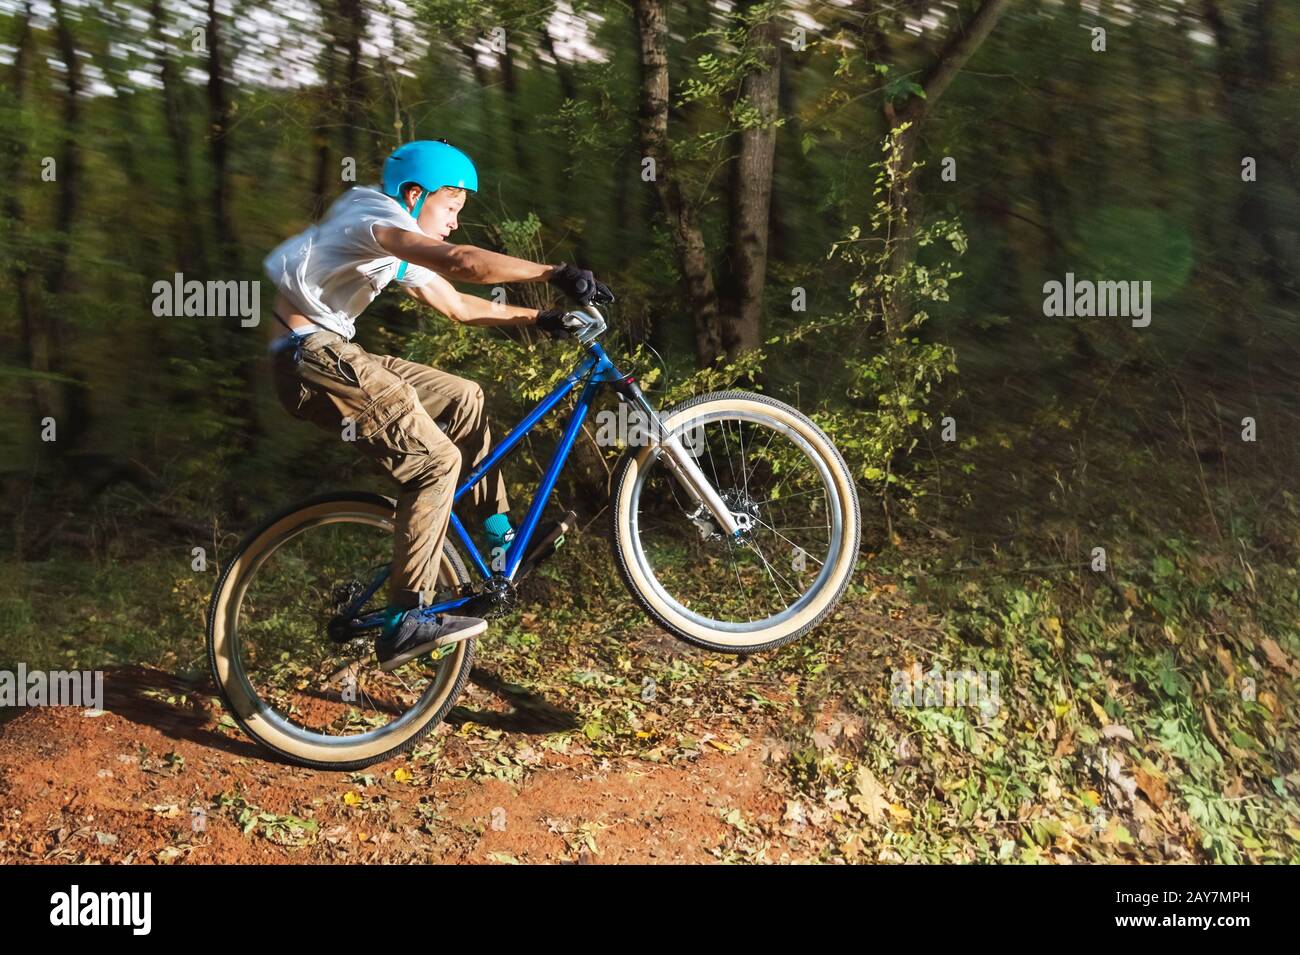 un jeune gars dans un casque vole atterri sur un vélo après avoir sauté d'un éjecteur Banque D'Images